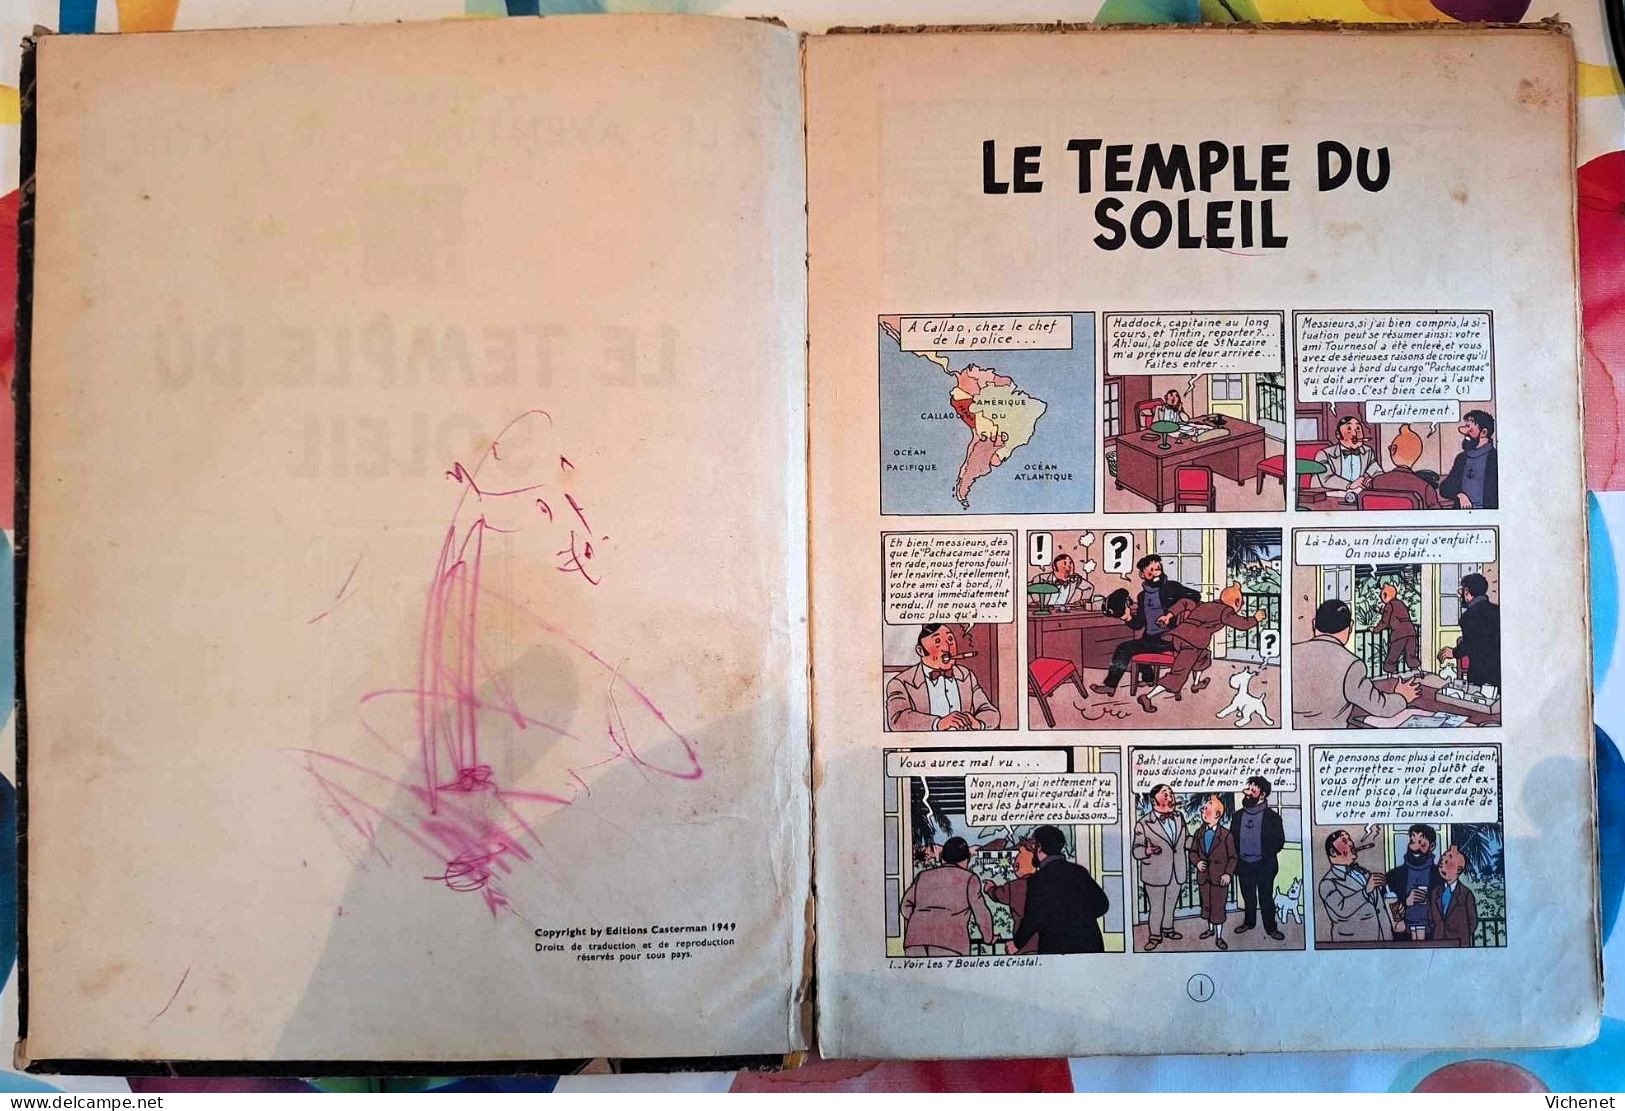 Tintin - Le Temple du Soleil EO 1949 + Coke en Stock EO 1958